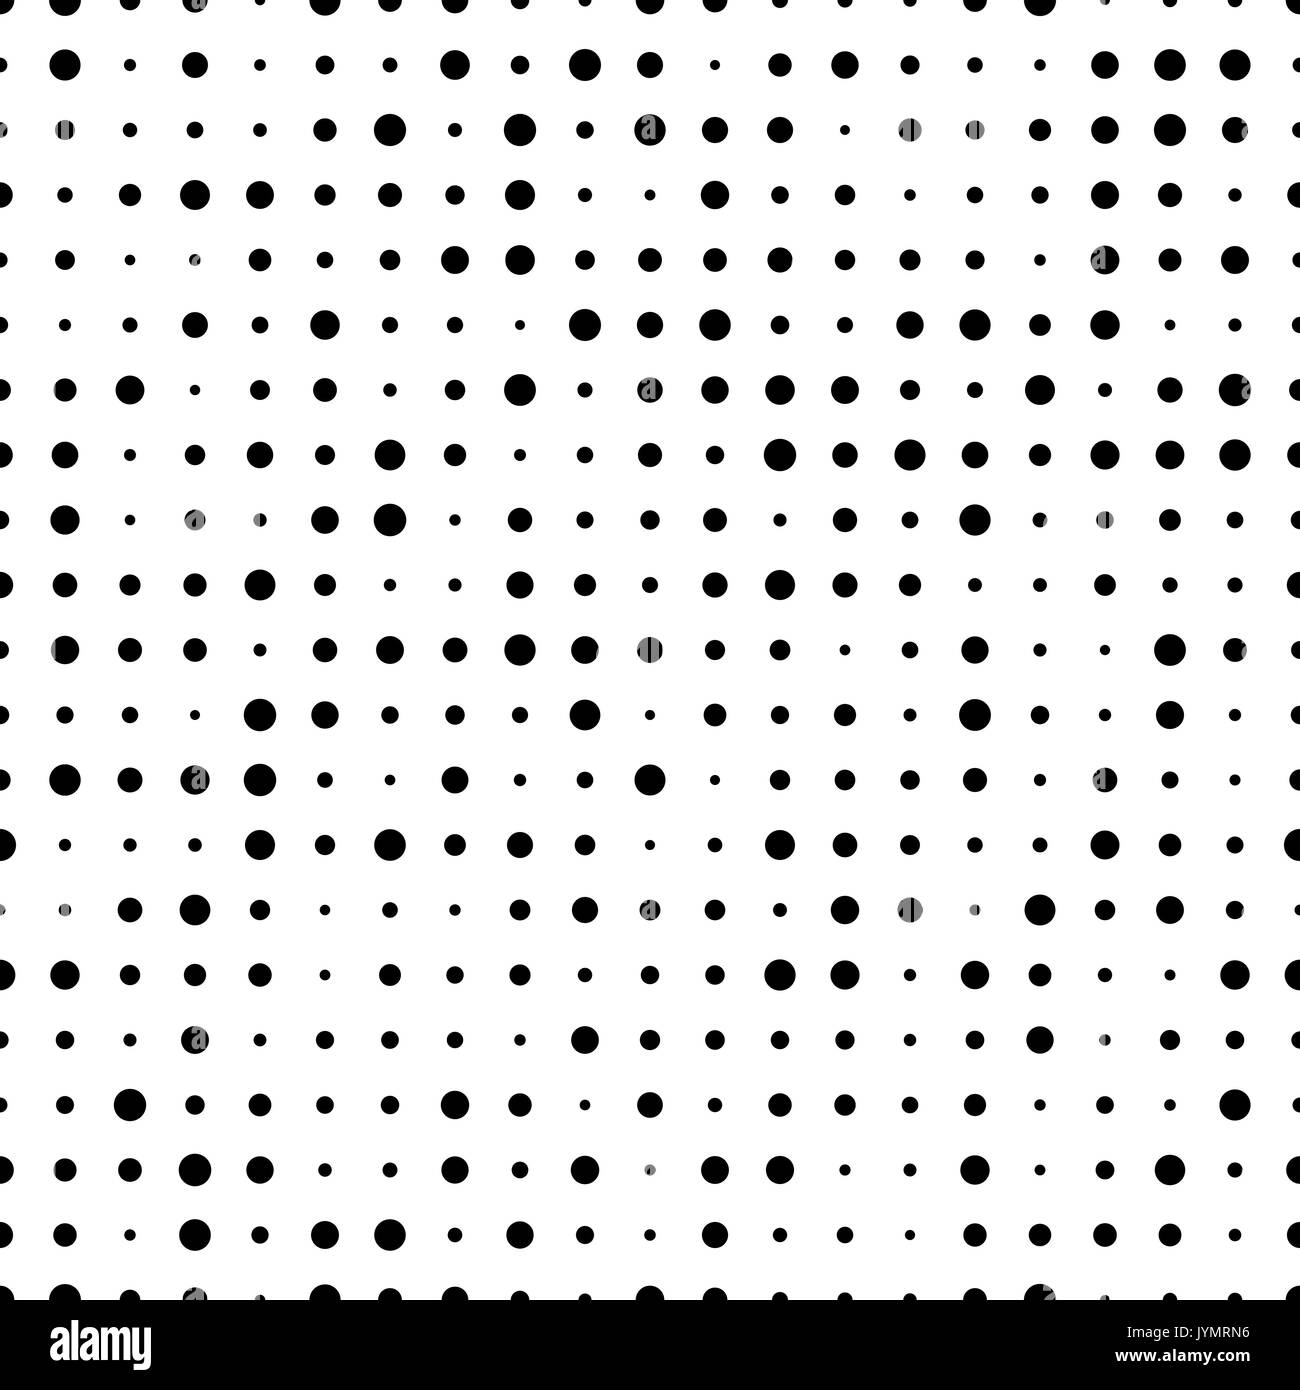 Nahtlose Muster mit kleinen Polka Dot Pattern. Gepunktete endlosen Kulisse. Retro vektor Hintergrund aus Kreisen. Stock Vektor